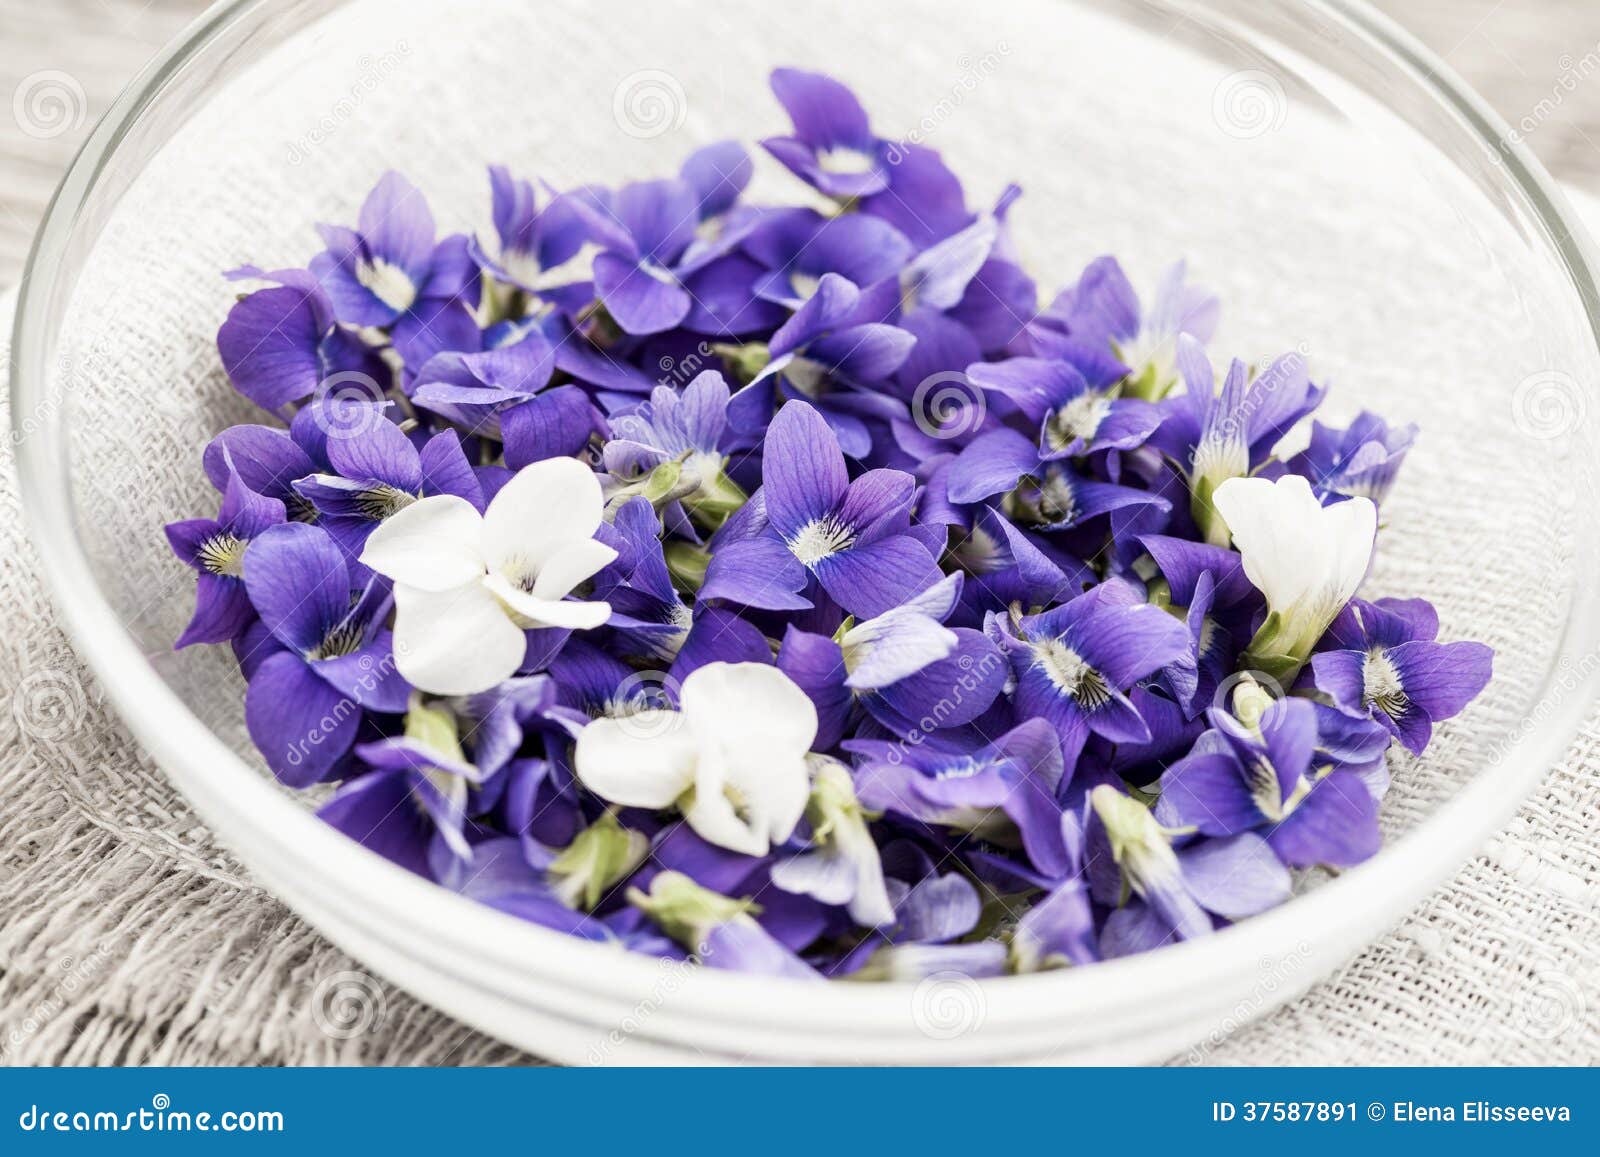 Violettes Comestibles Dans La Cuvette Image stock - Image du floraison,  comestible: 37587891